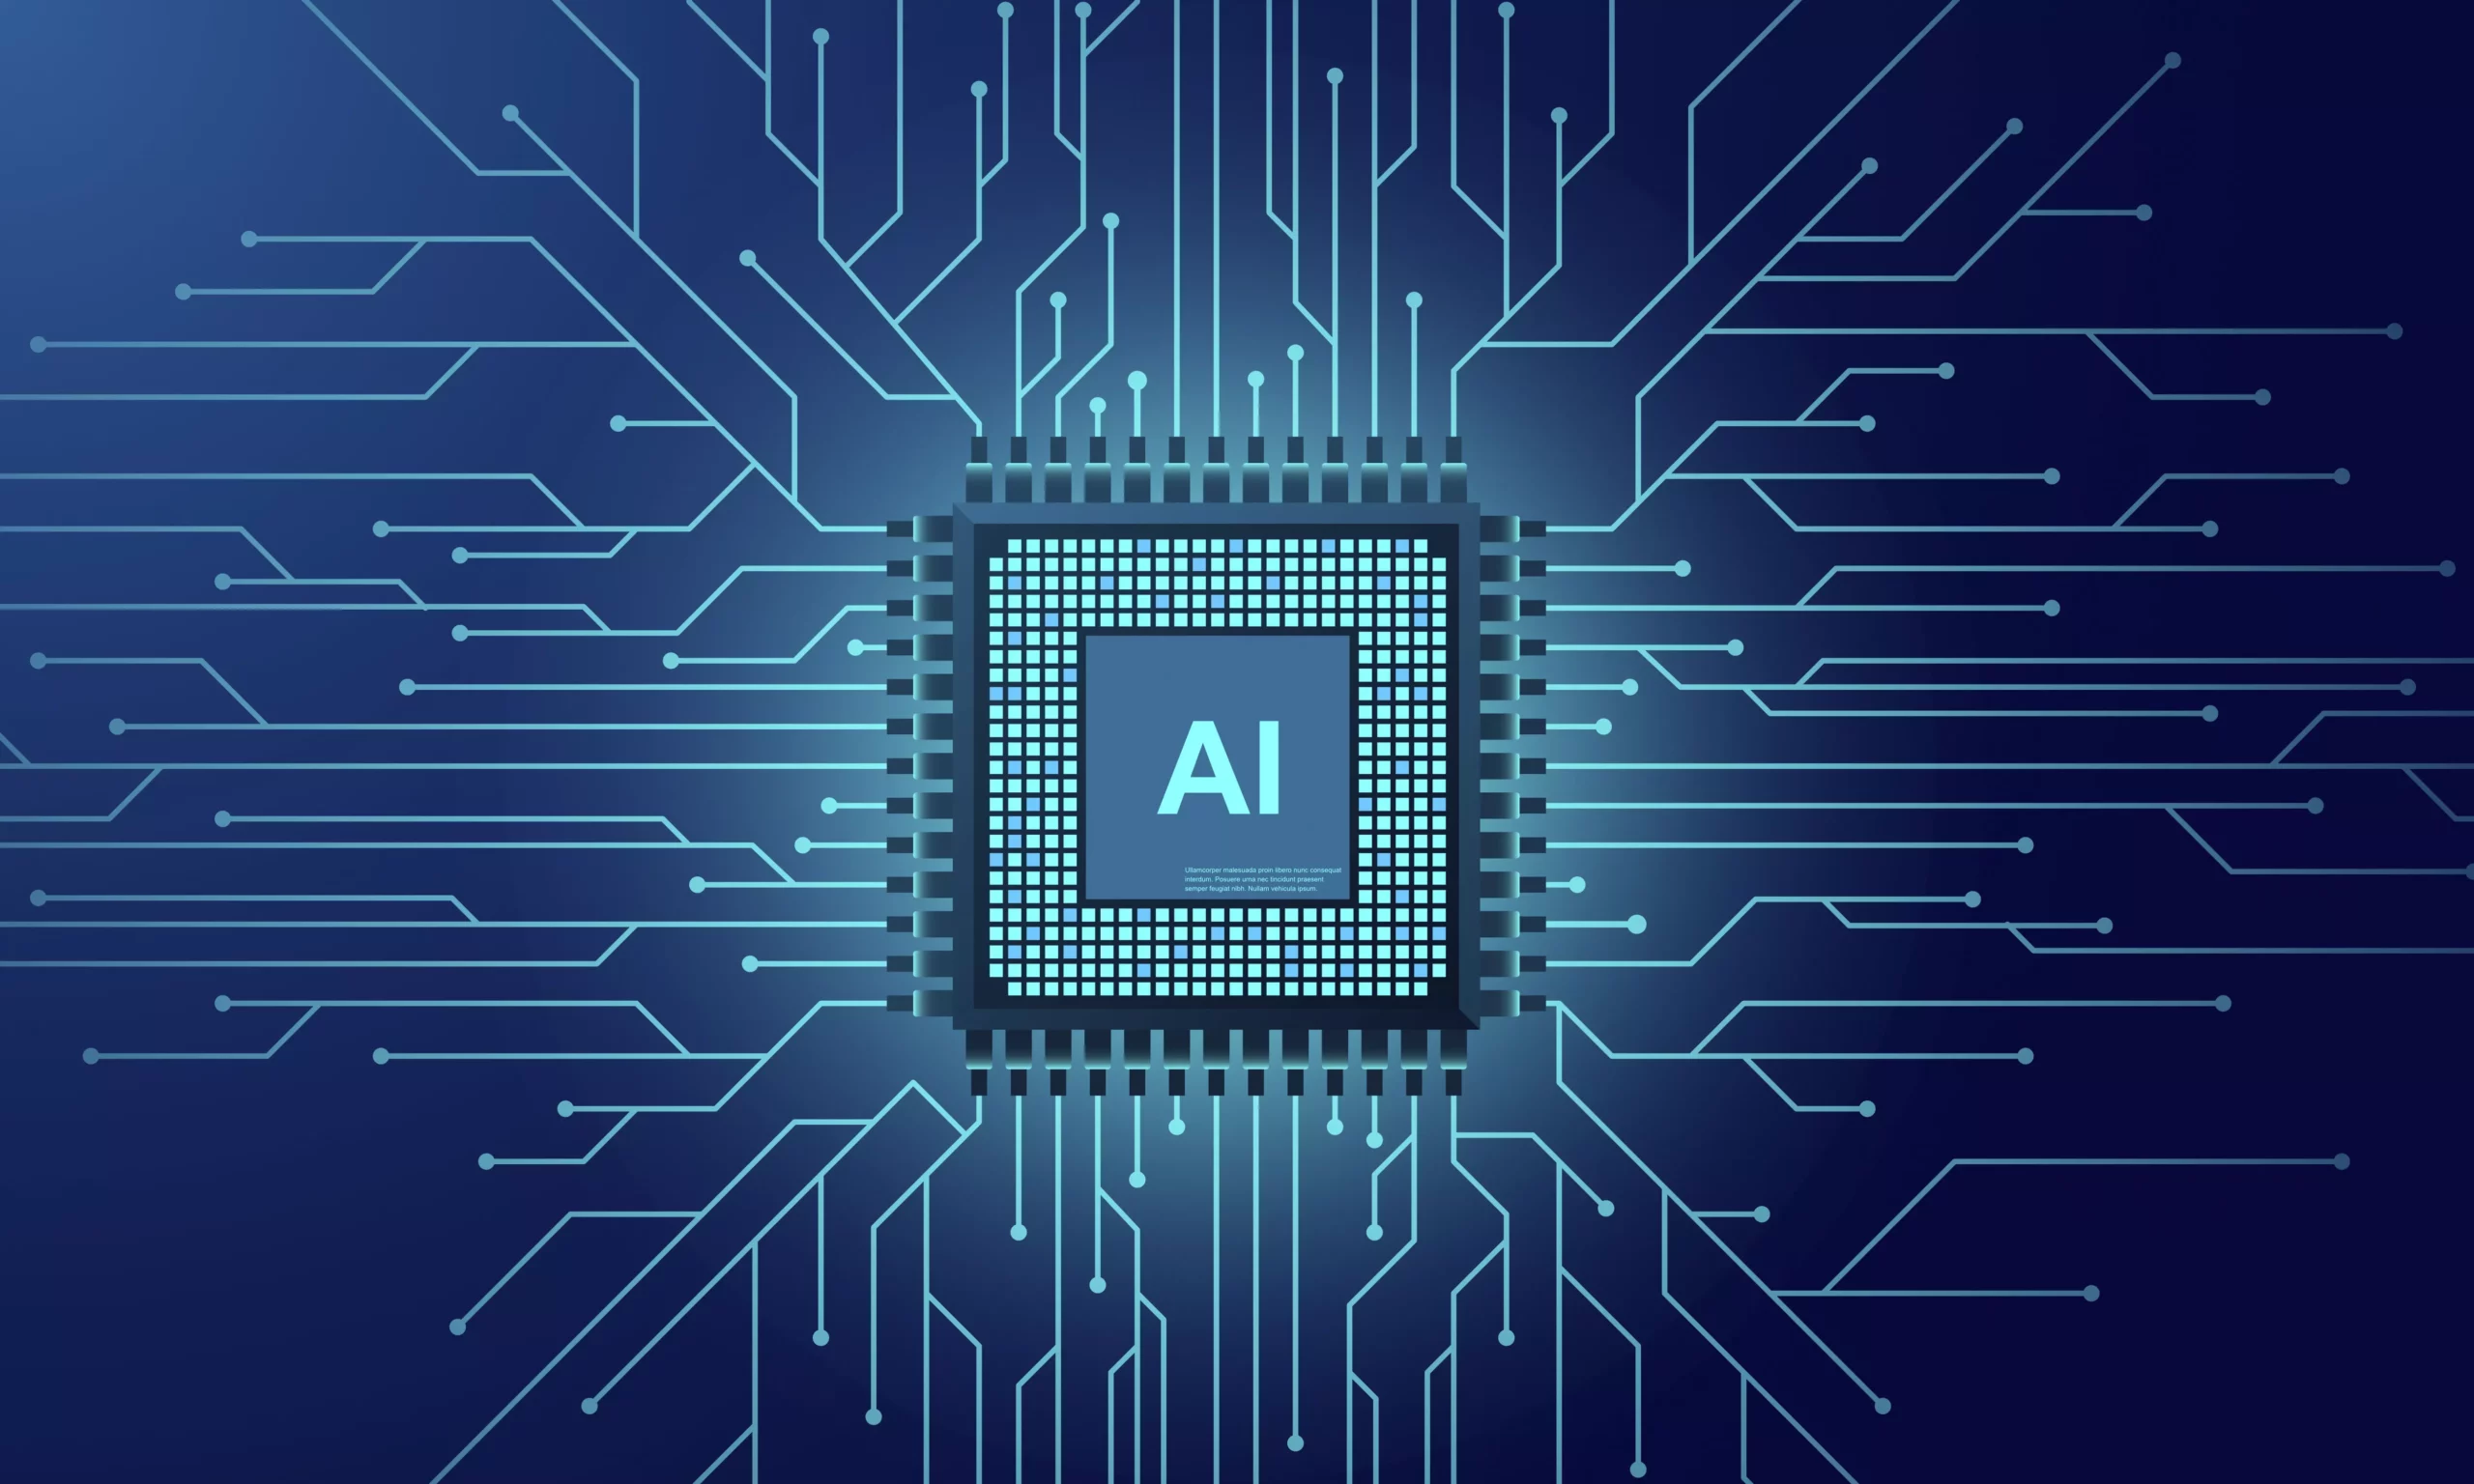 Fondo azul con nodos de red y un cubo con las inicialse AI, representando la inteligencia artificial en los departamentos de TI